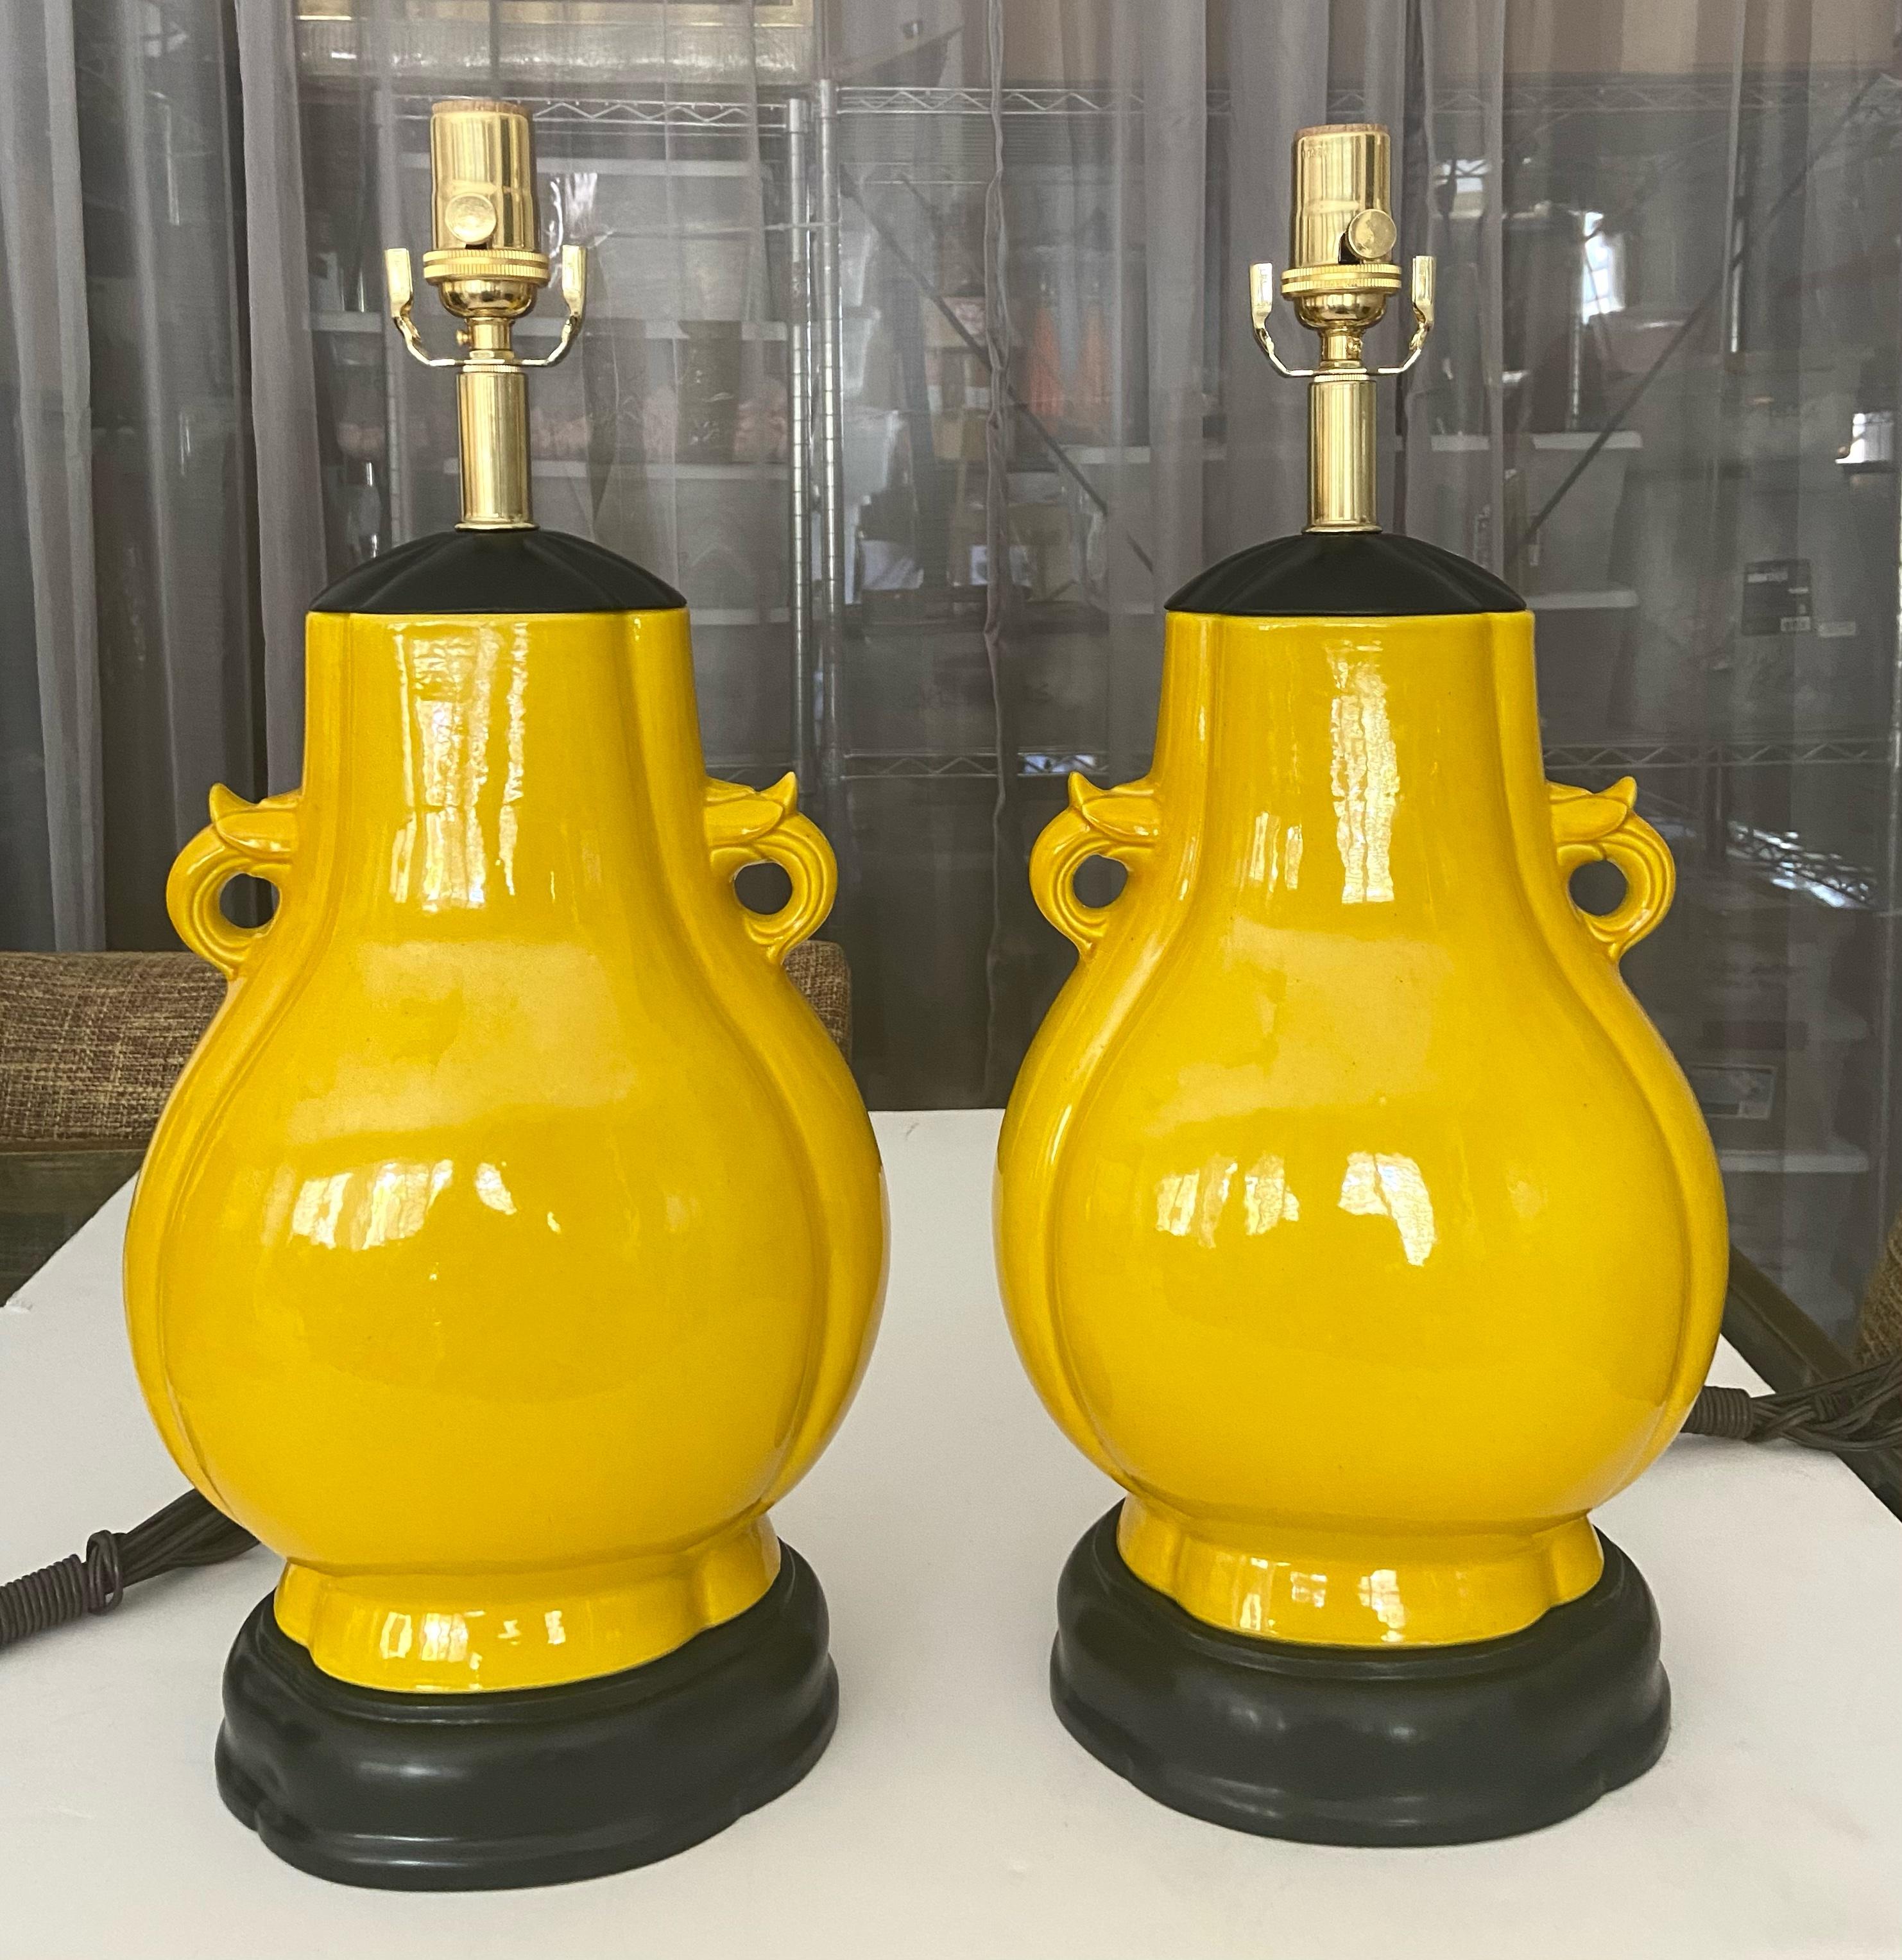 Paar japanische, lebhafte, monochrome, gelbe, abgeflachte, eiförmige Porzellanvasen-Tischlampen. Die leuchtend gelben Vasen werden von Henkeln flankiert, die auf ihren originalen, schwarz lackierten Lampenfüßen und Deckeln aus gedrechseltem Holz